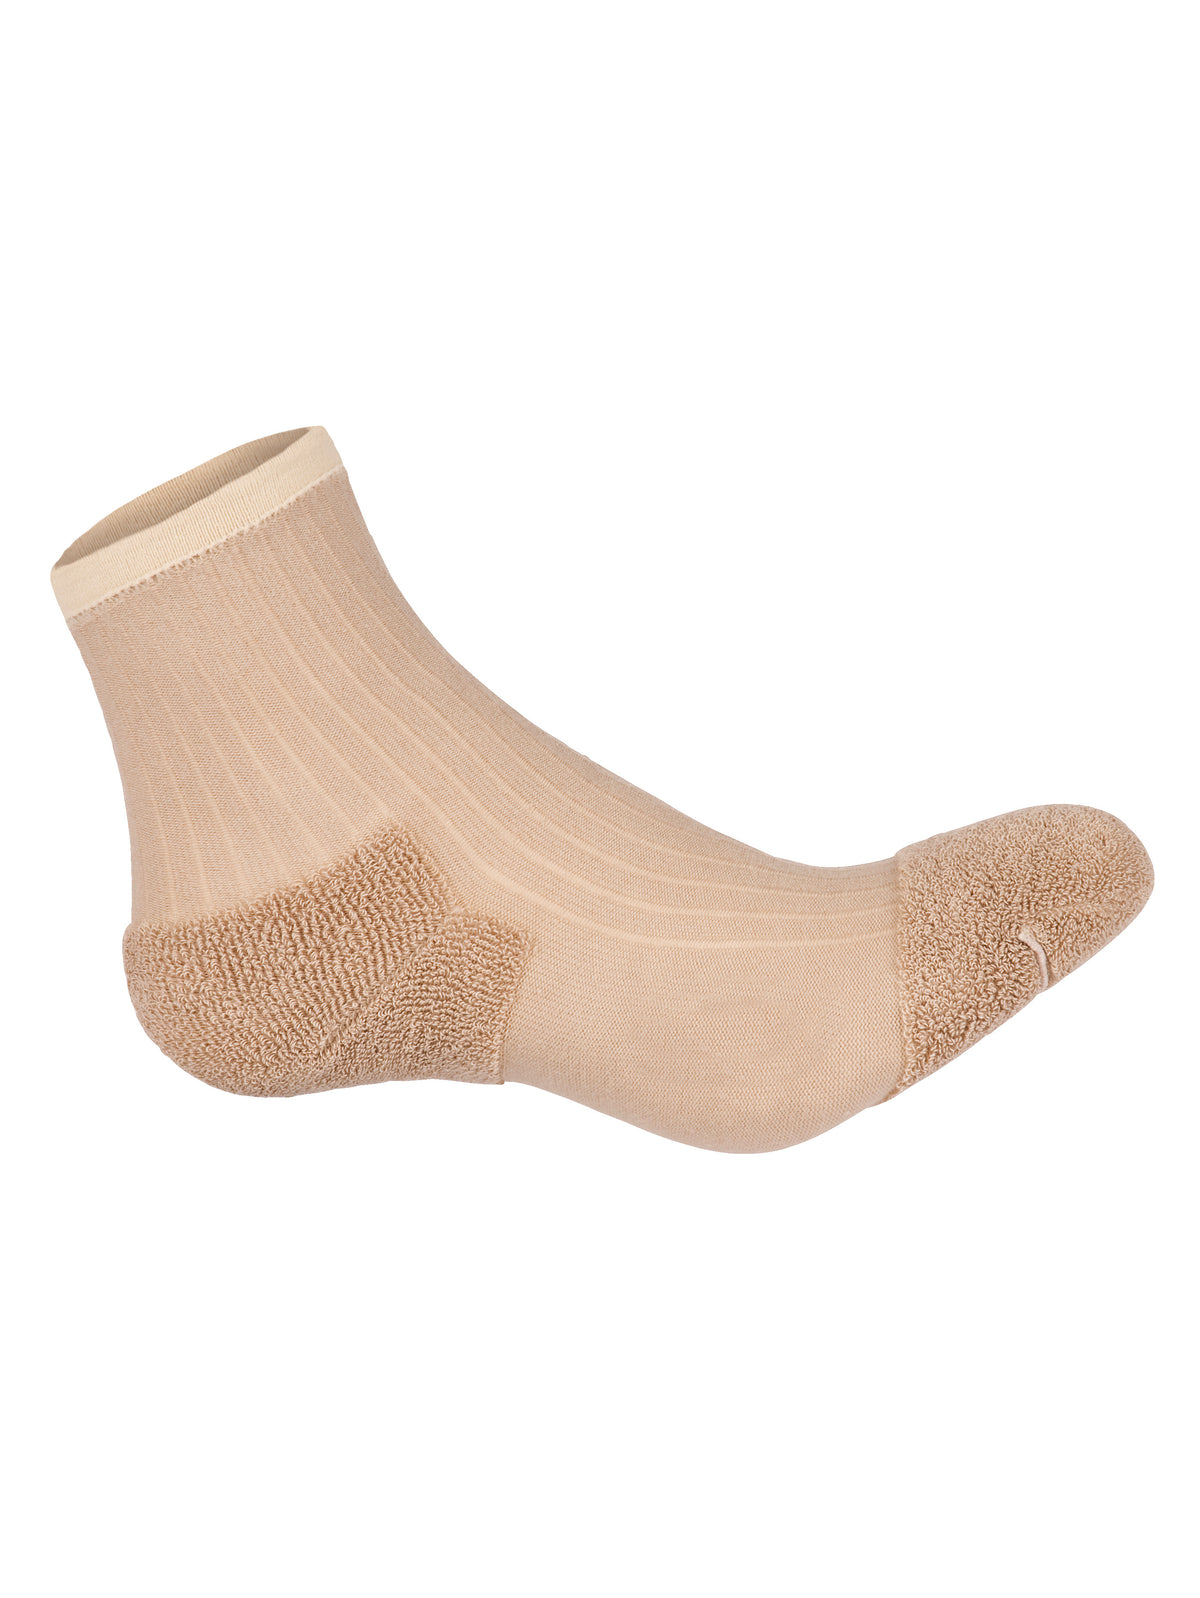 Sensitiv Socken, 2 Paar